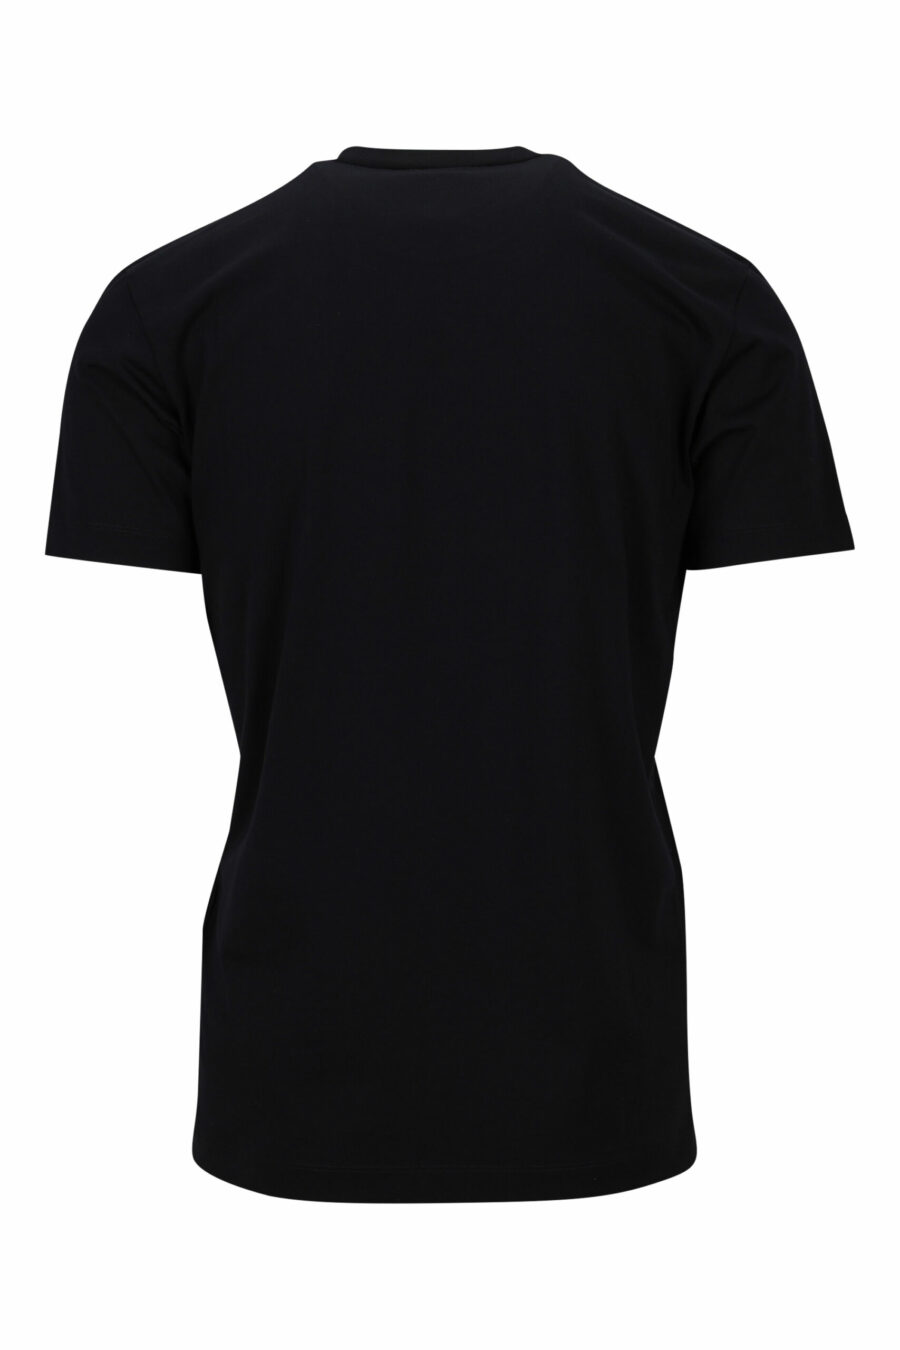 Schwarzes T-shirt mit Minilogo "ceresio 9, milano" - 8054148505264 1 skaliert